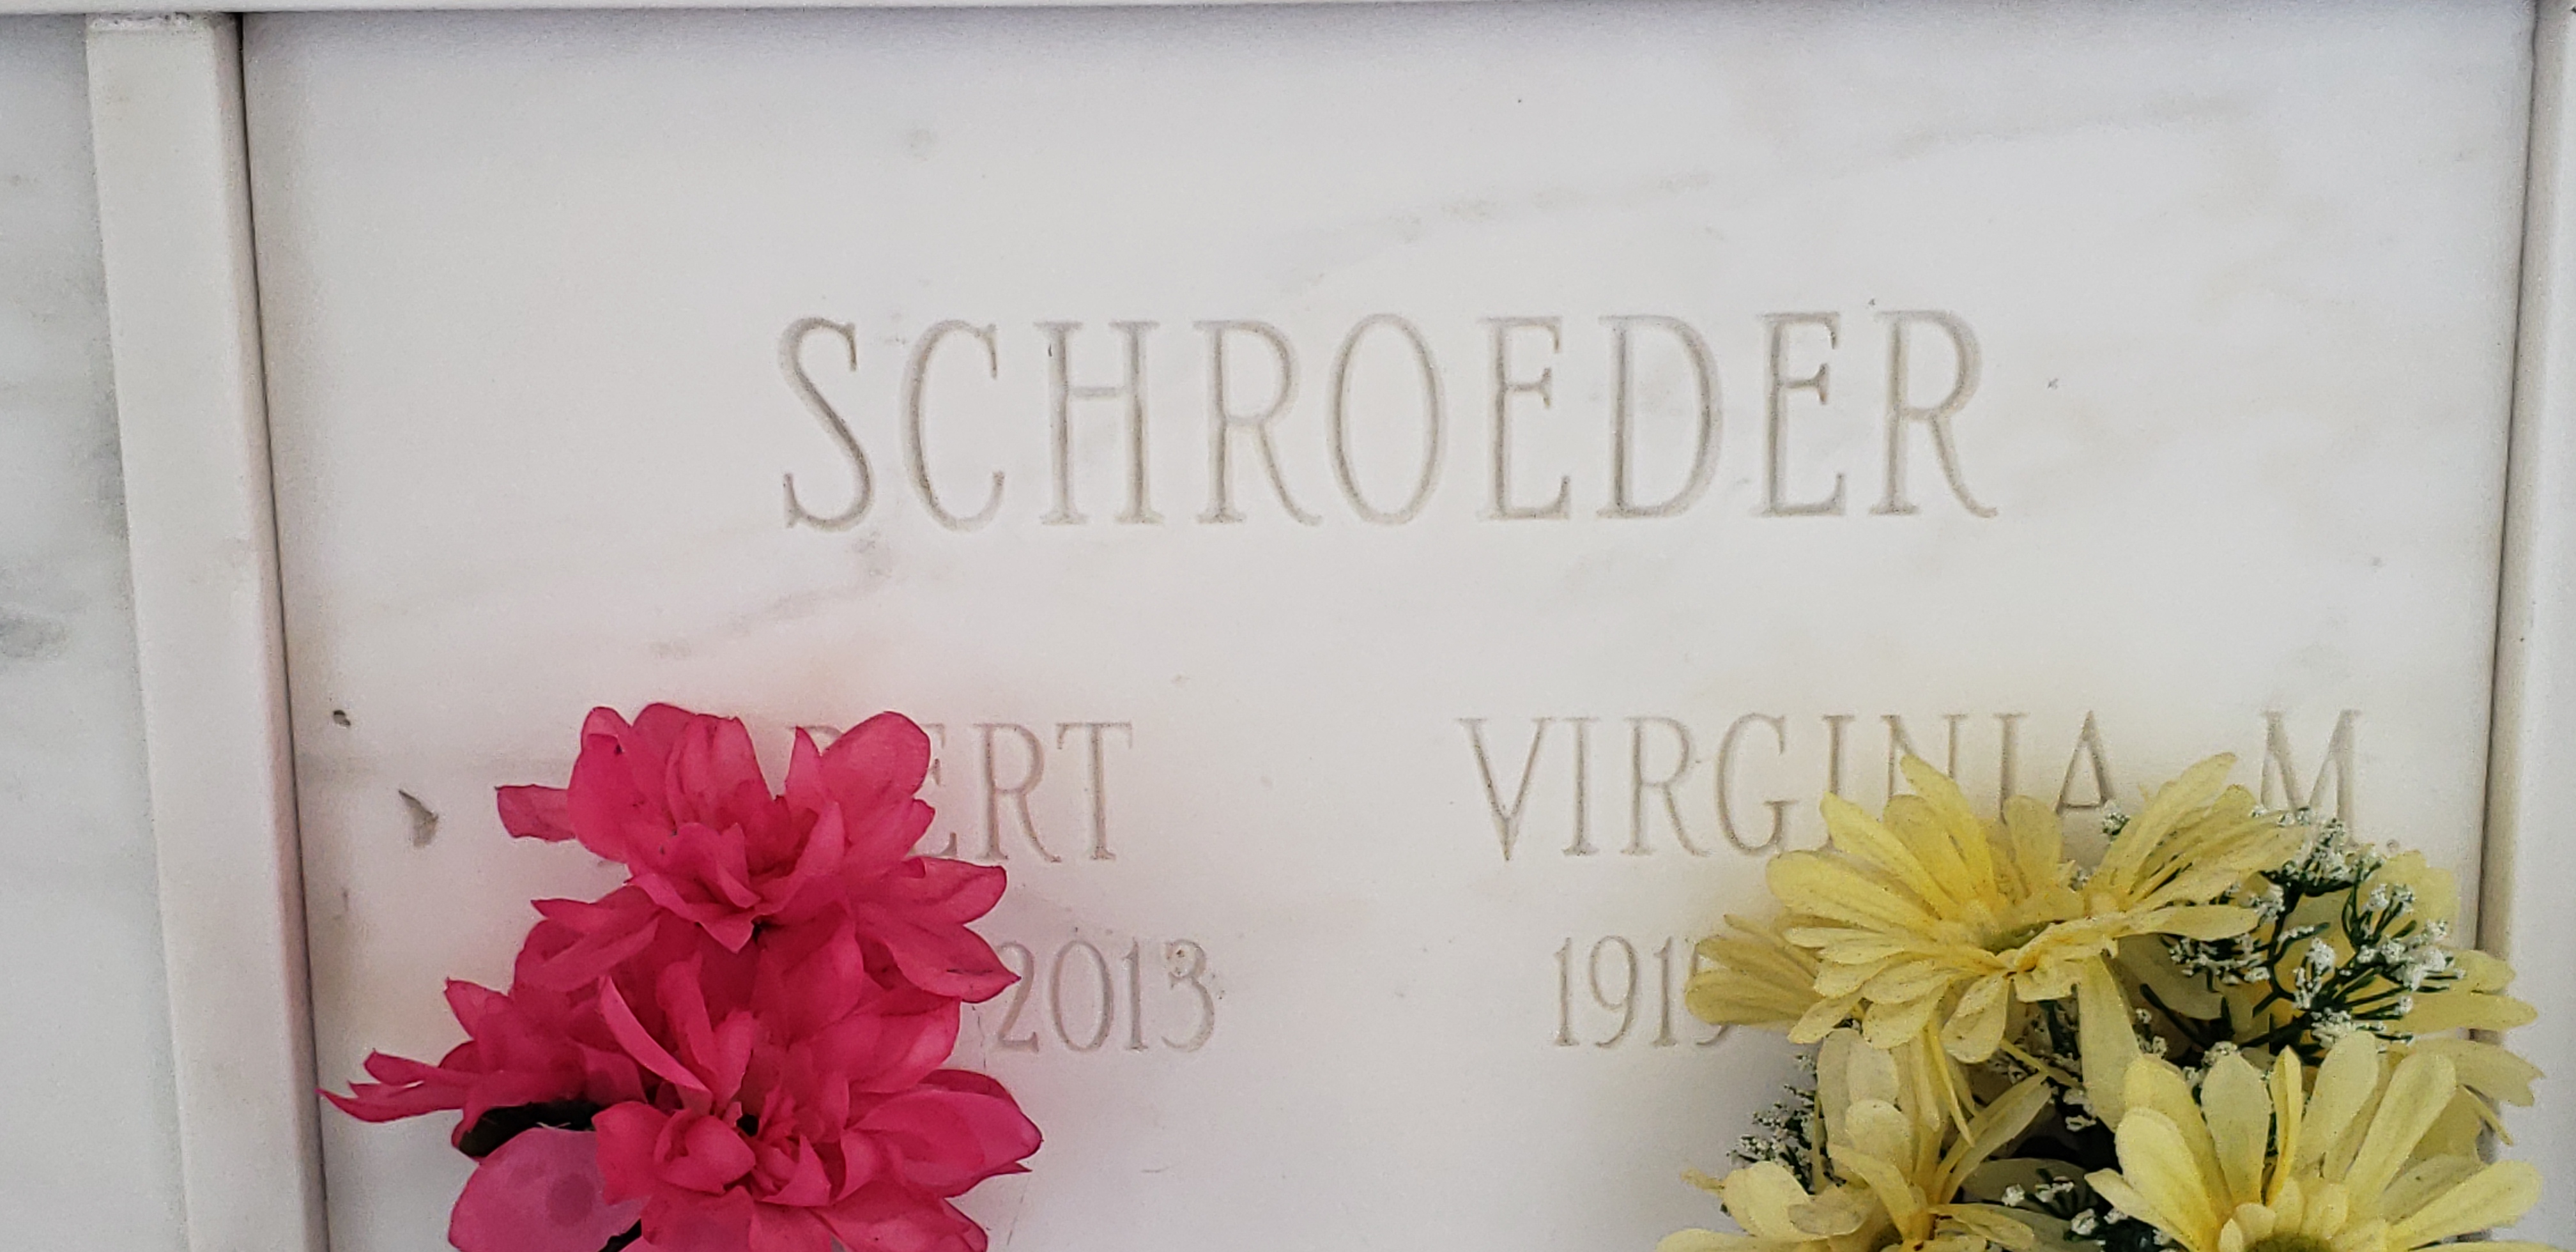 Virginia M Schroeder